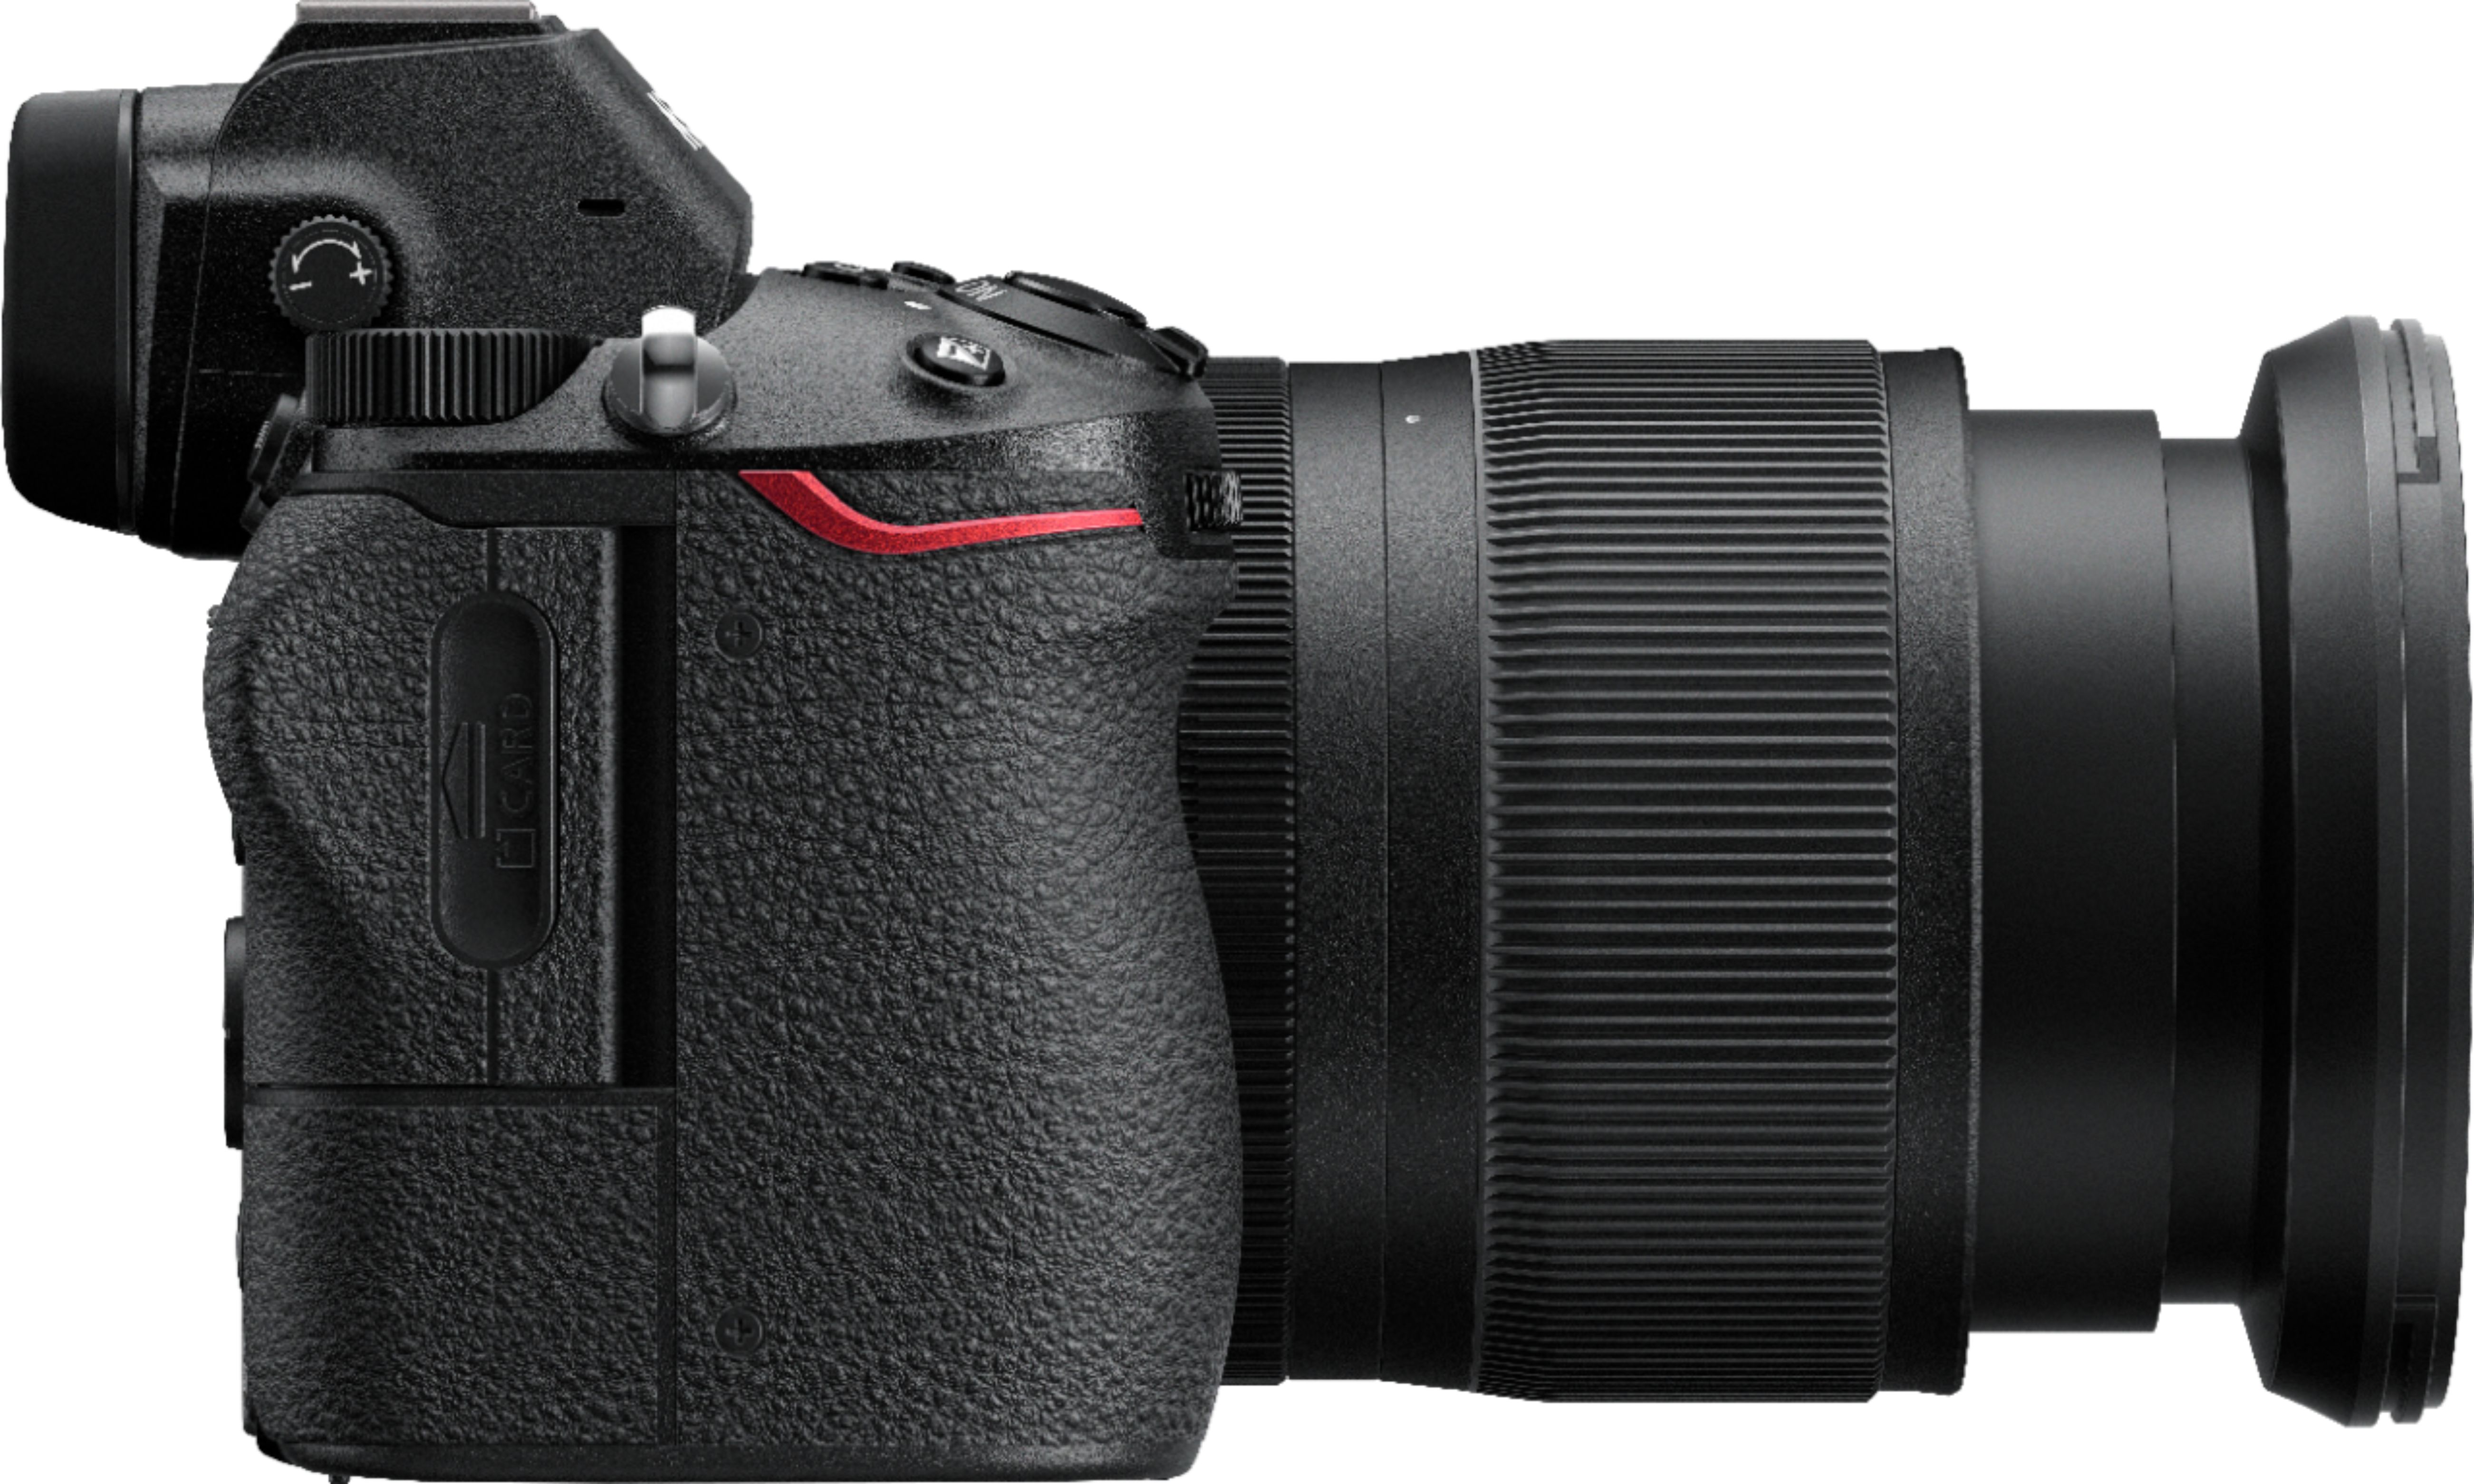 Nikon Z6 Mirrorless 4K Video Camera with NIKKOR Z 24-70mm Lens 